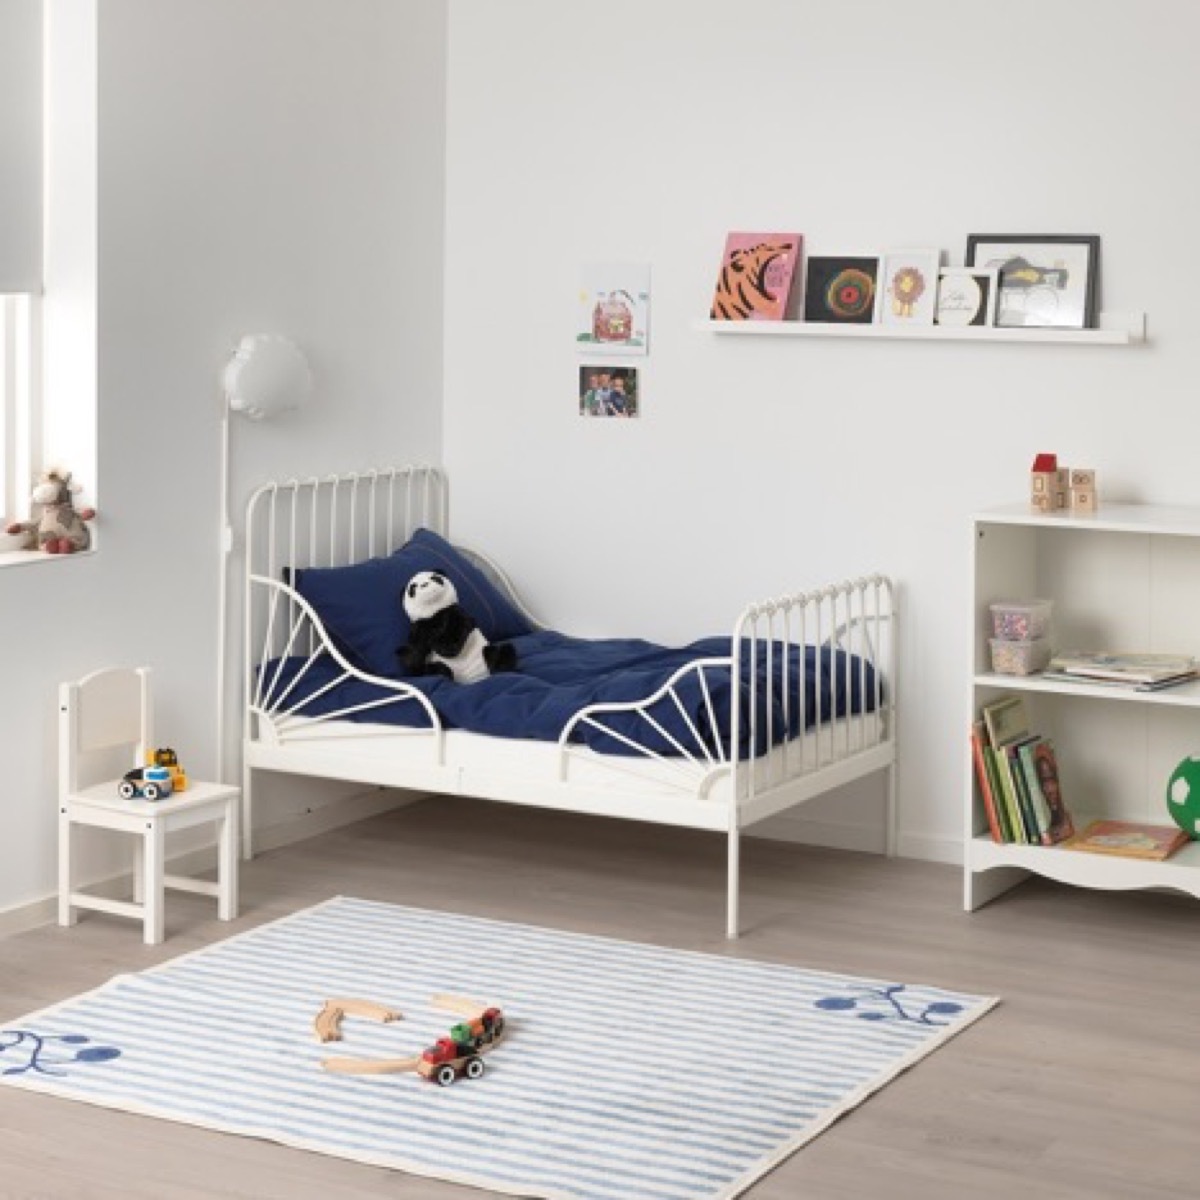 Ikea toddler bed in bedroom